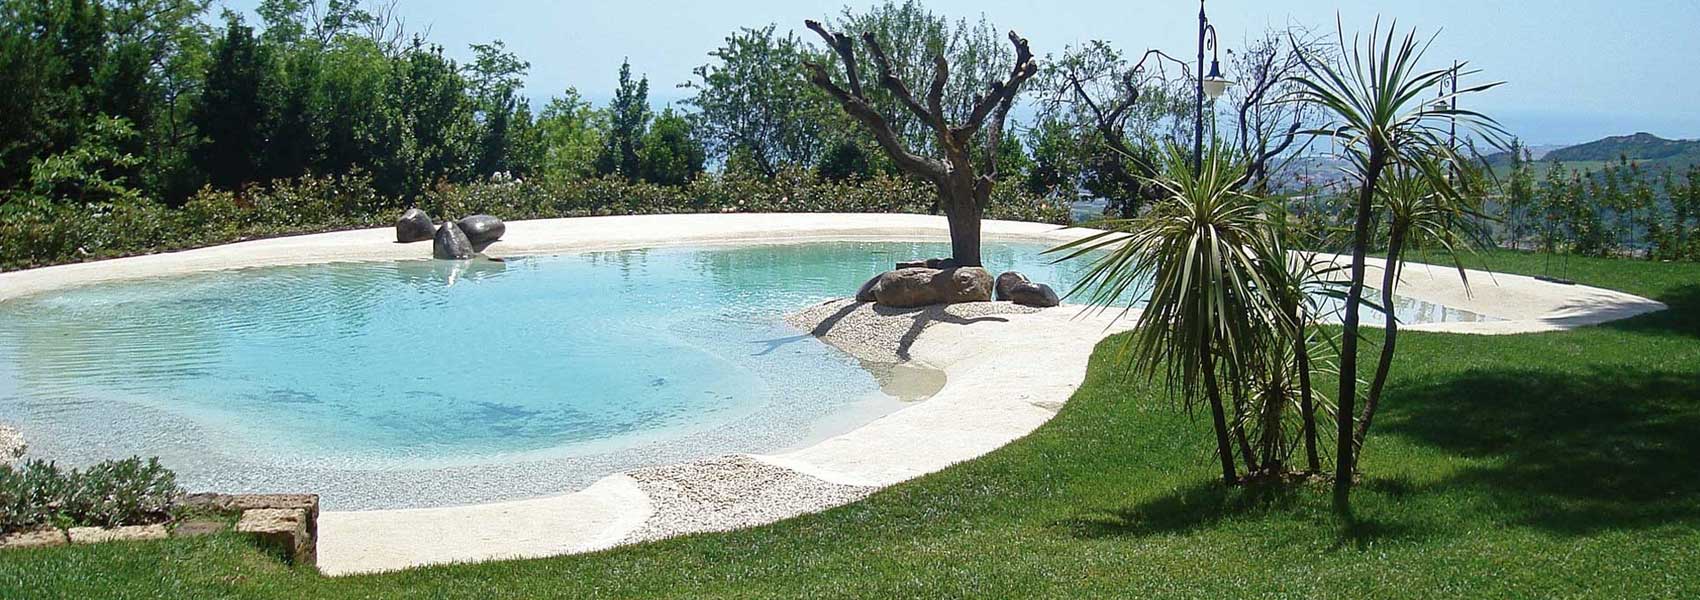 Construção de piscinas com areia natural